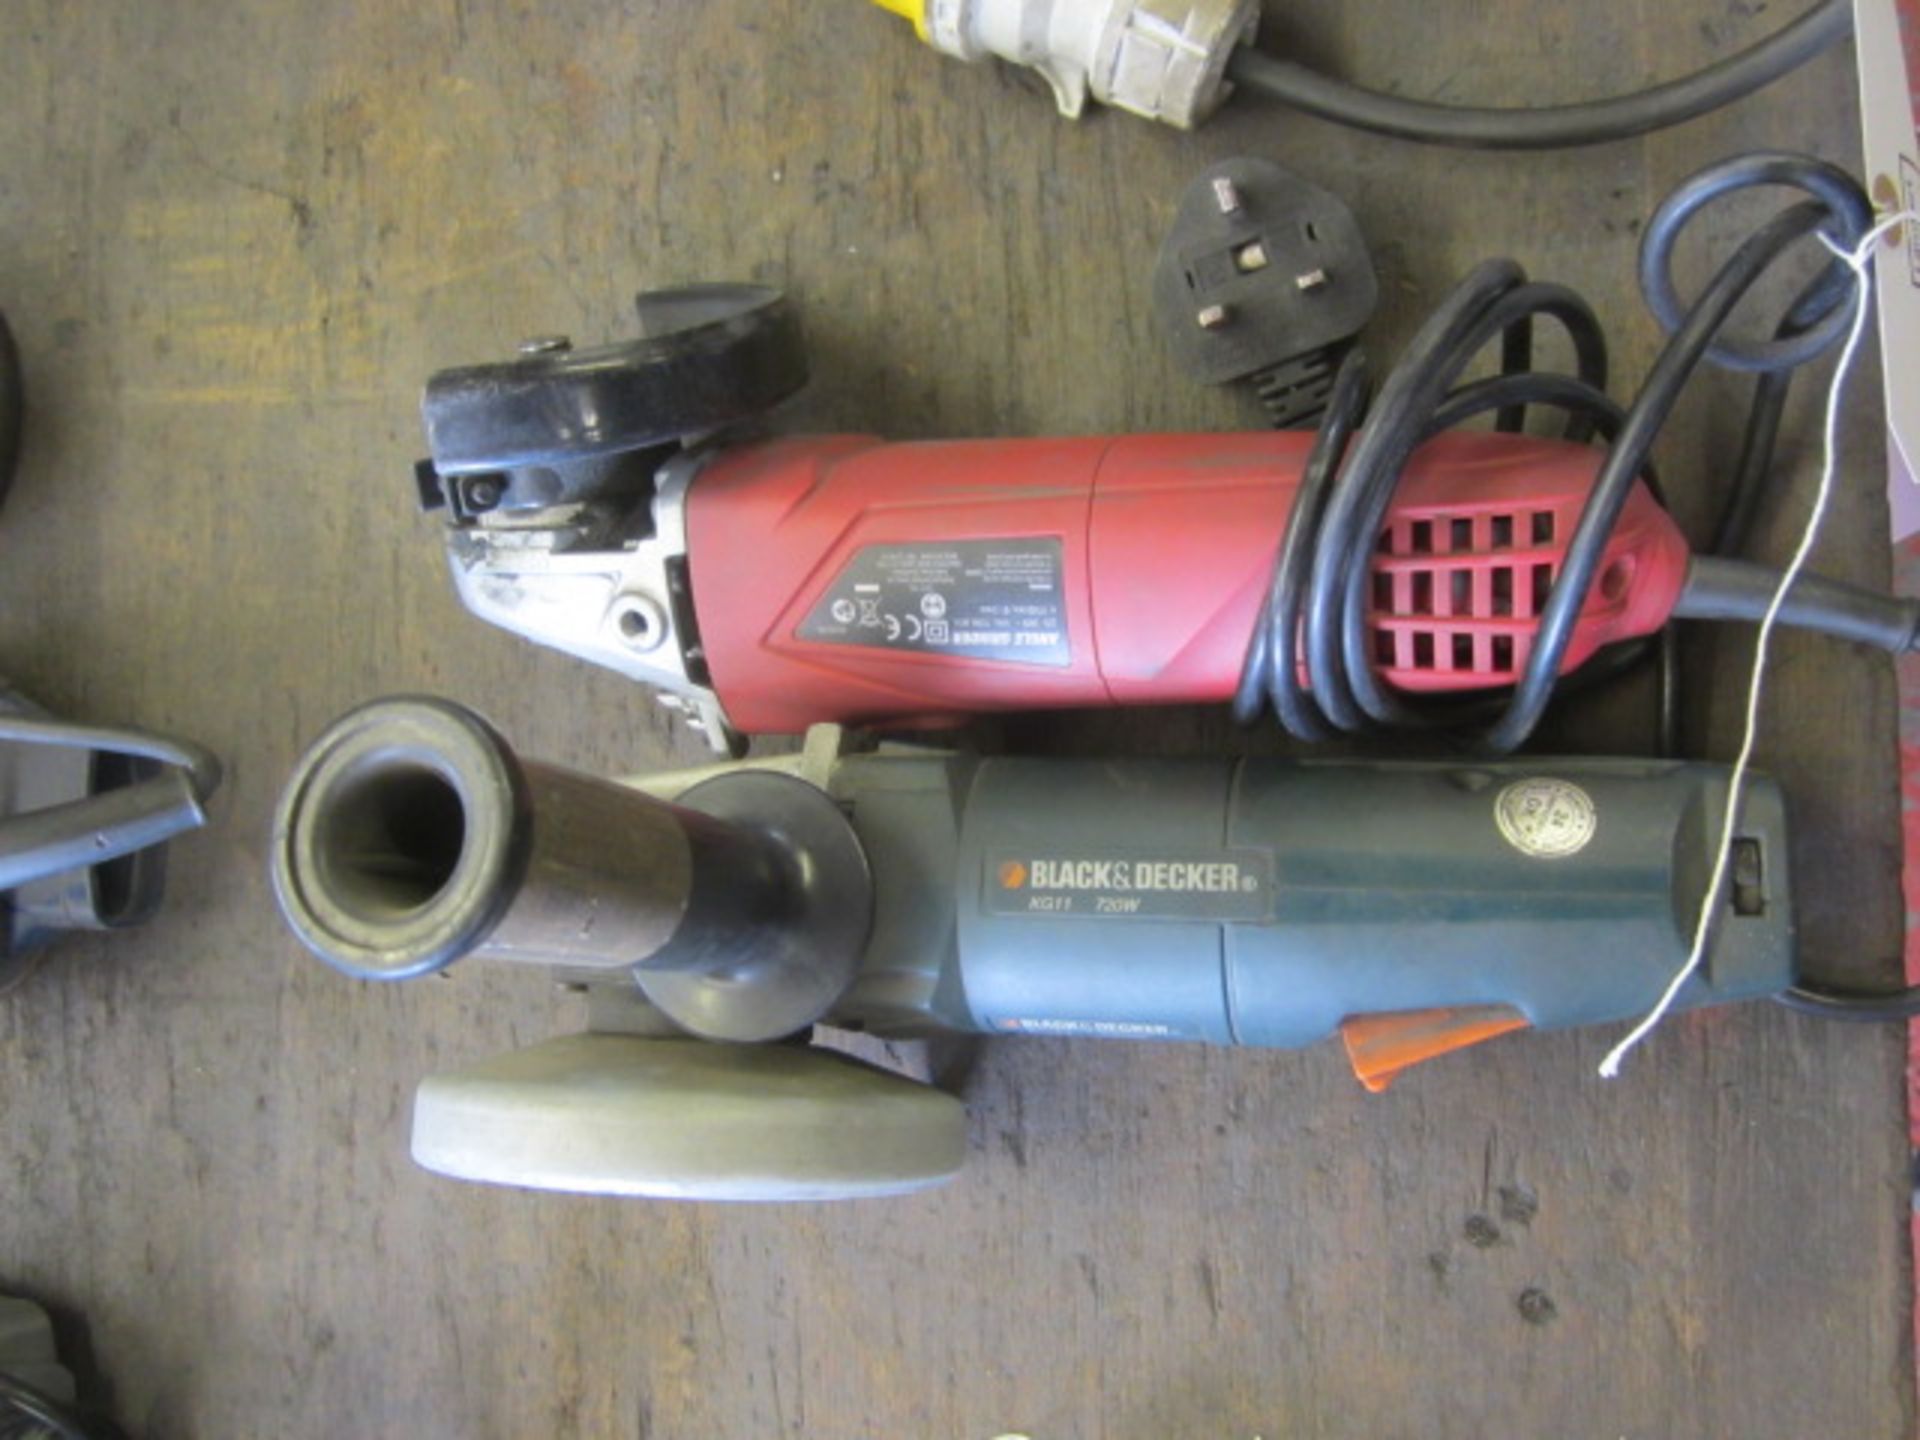 Hyper Tough 240v angle grinder and a Black & Decker KG11 720v angle grinder (no cable)